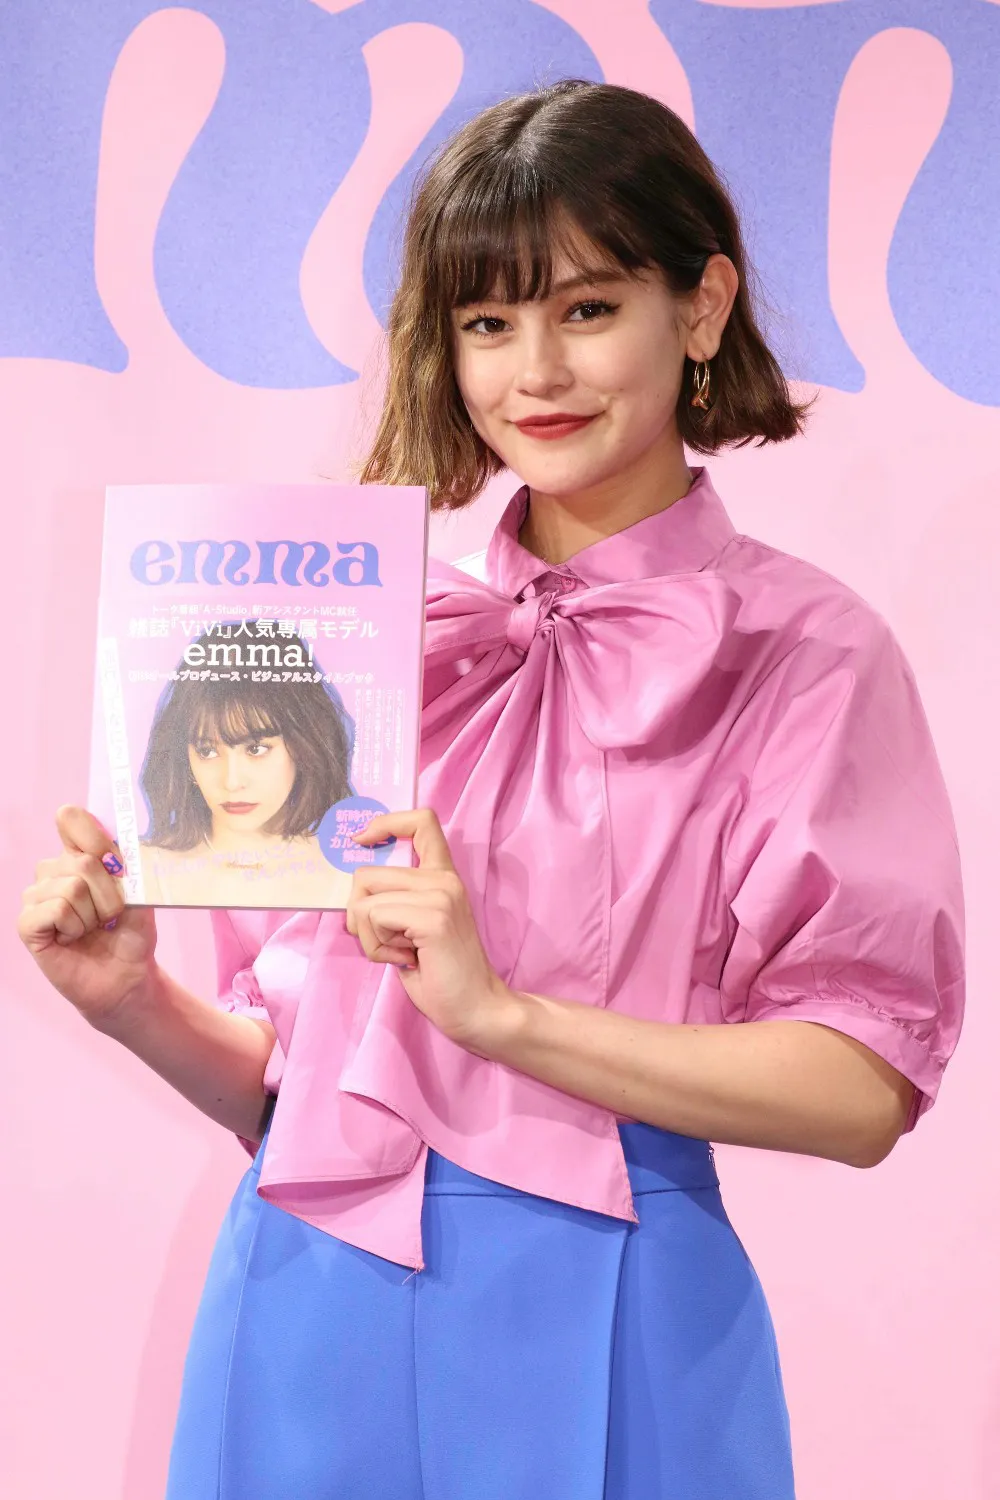 emmaが5月21日にビジュアルスタイルブック「emma」を発売！　渋谷にて発売記念イベントを開催した